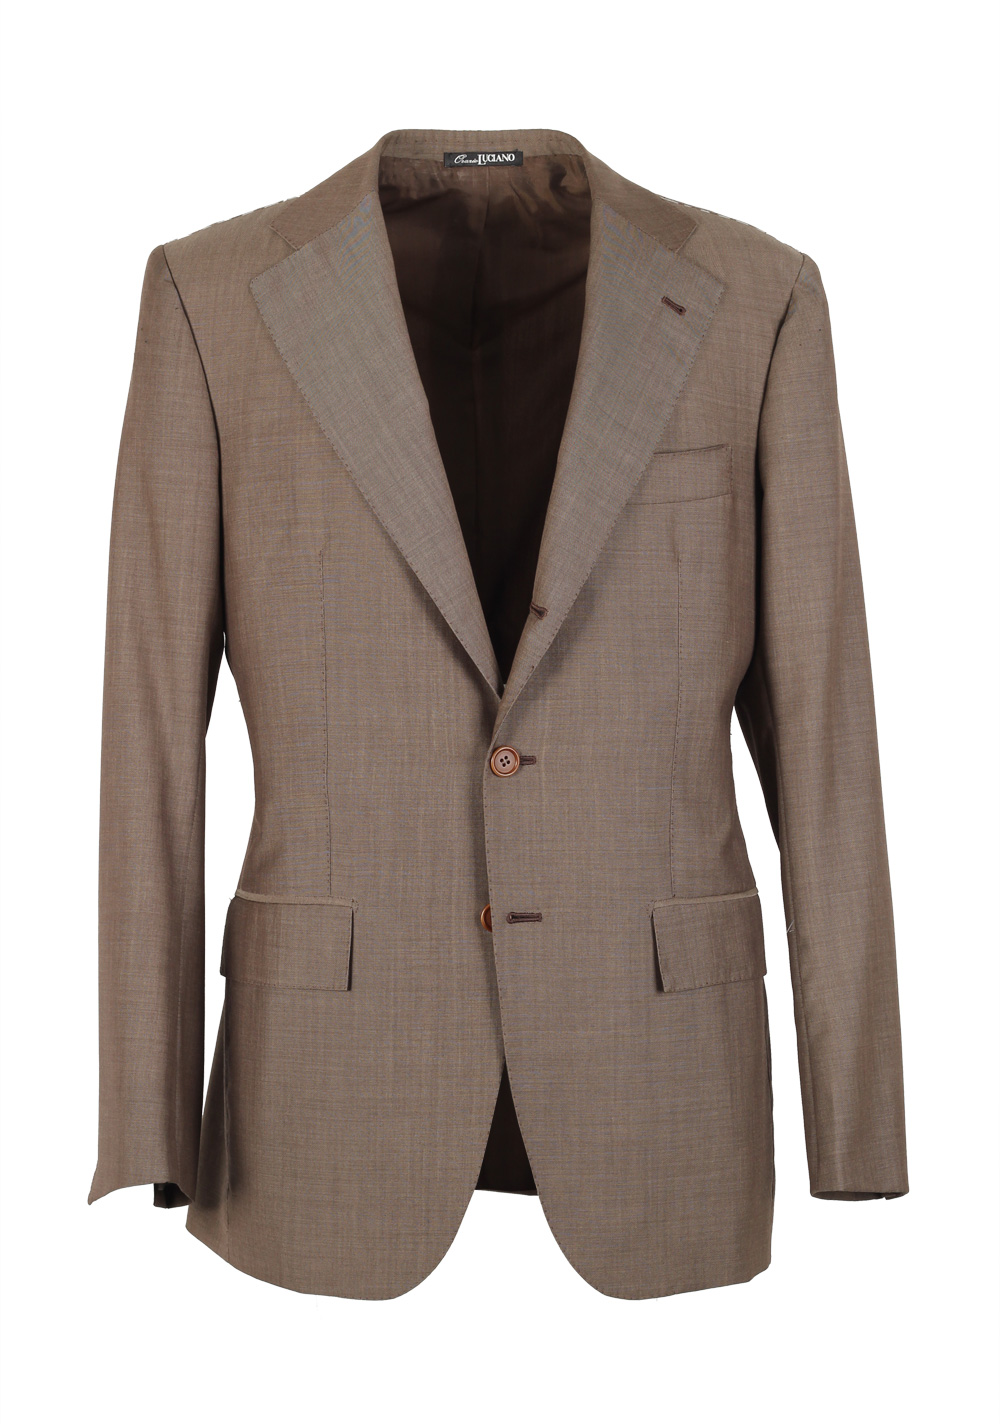 Orazio Luciano La Vera Sartoria Napoletana Suit Size 46 / 36R U.S. | Costume Limité